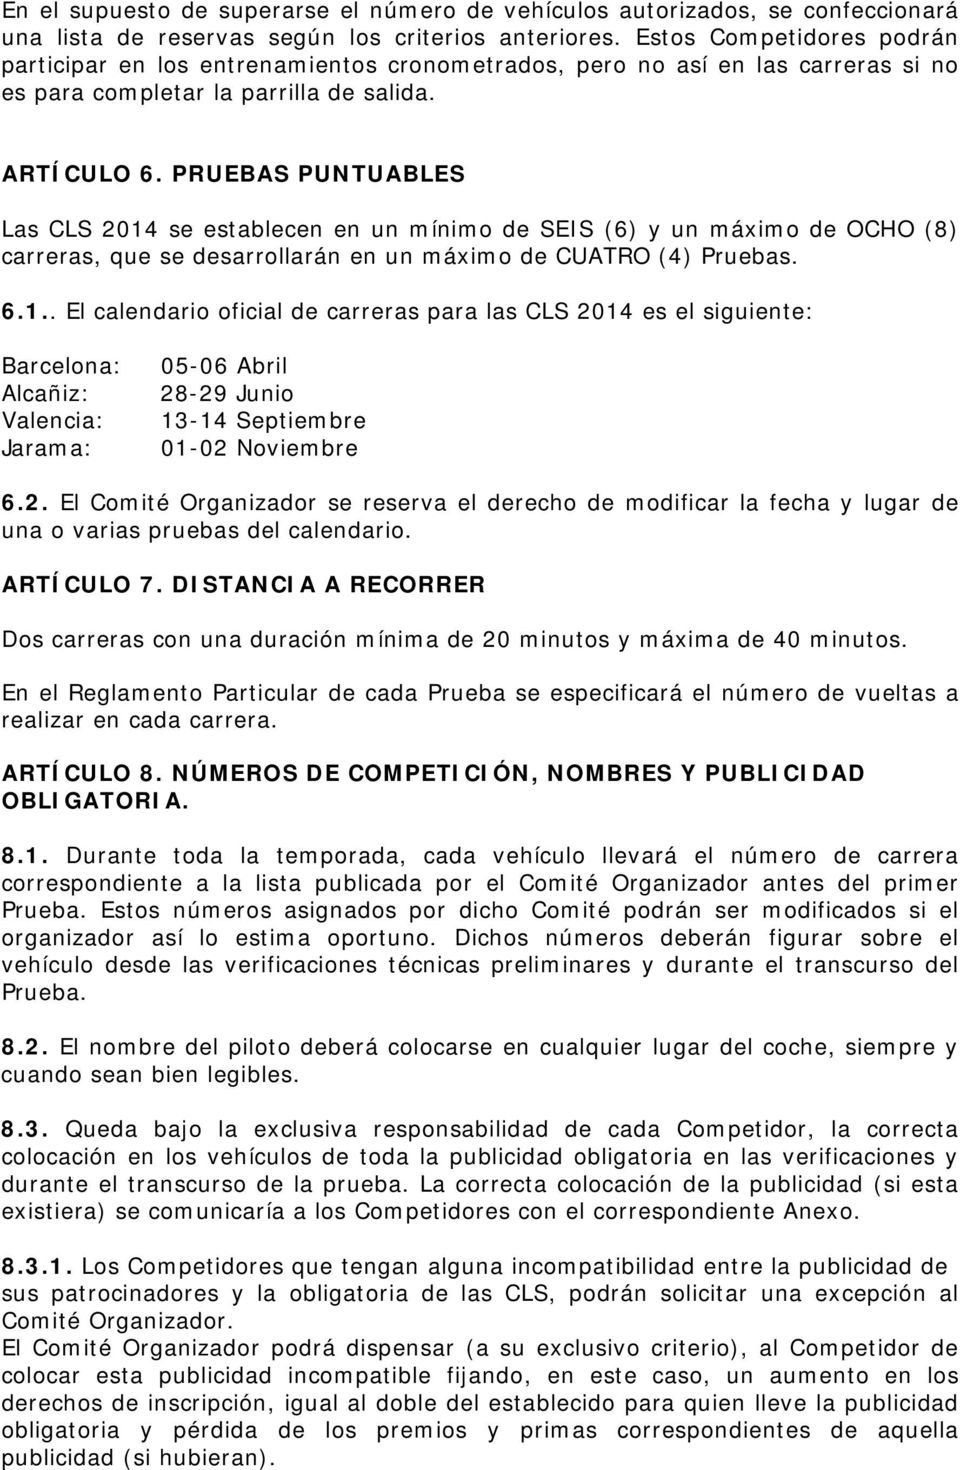 PRUEBAS PUNTUABLES Las CLS 2014 se establecen en un mínimo de SEIS (6) y un máximo de OCHO (8) carreras, que se desarrollarán en un máximo de CUATRO (4) Pruebas. 6.1.. El calendario oficial de carreras para las CLS 2014 es el siguiente: Barcelona: Alcañiz : Valencia: Jarama: 05-06 Abril 28-29 Junio 13-14 Septiembre 01-02 Noviembre 6.